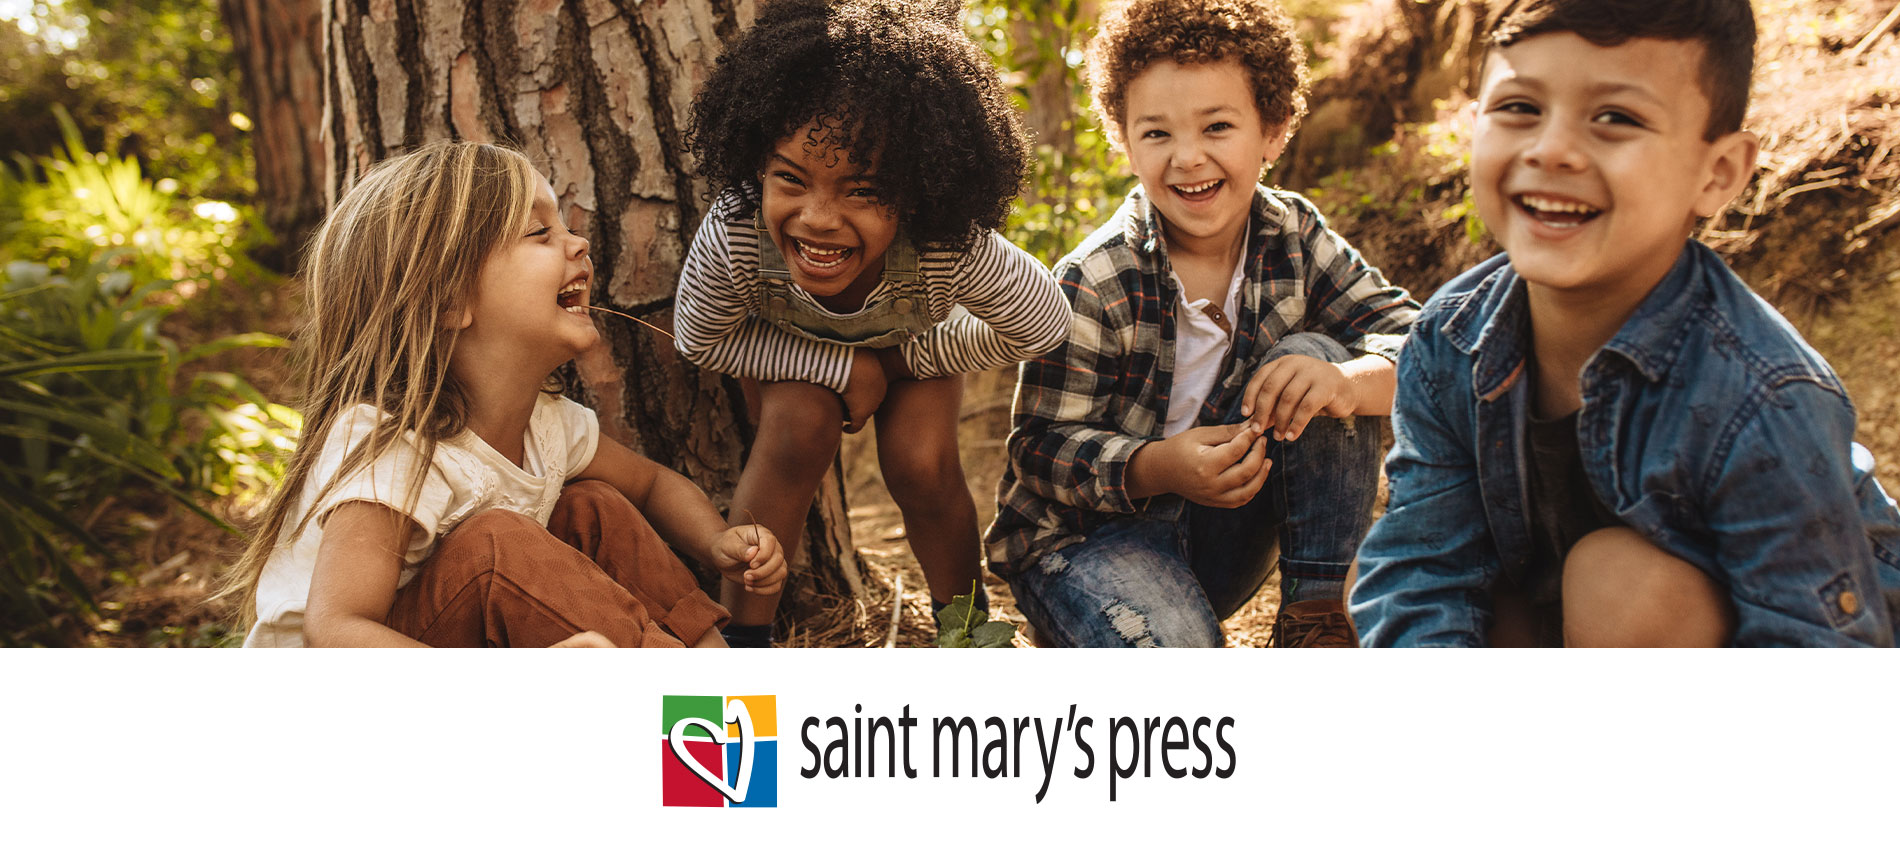 Saint Mary’s Press